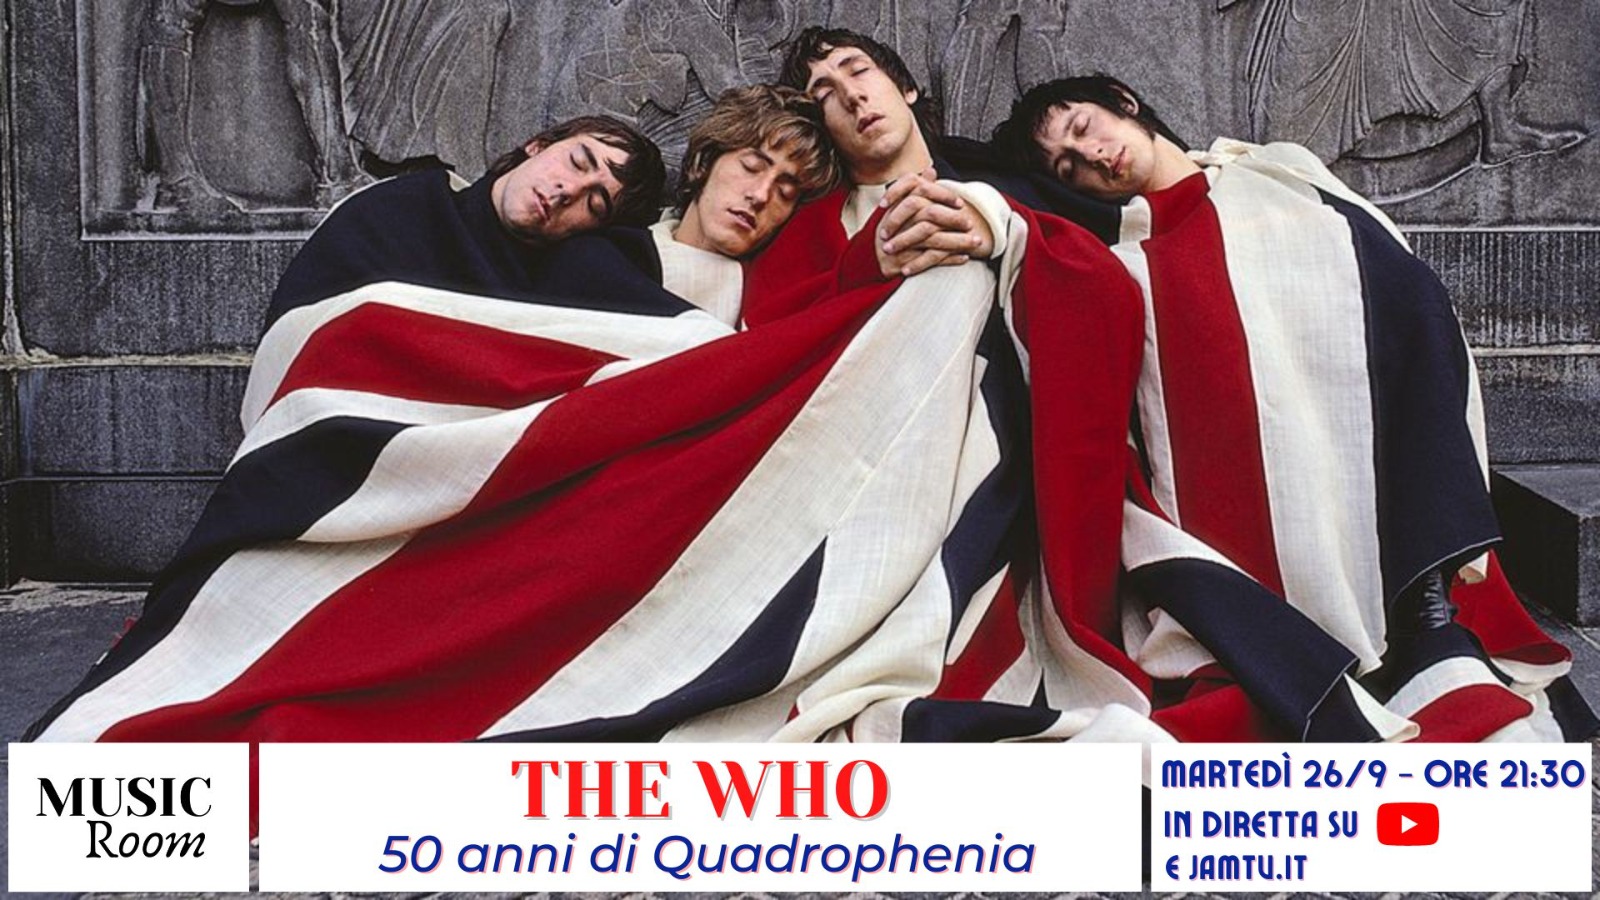 The Who - 50 anni di Quadrophenia